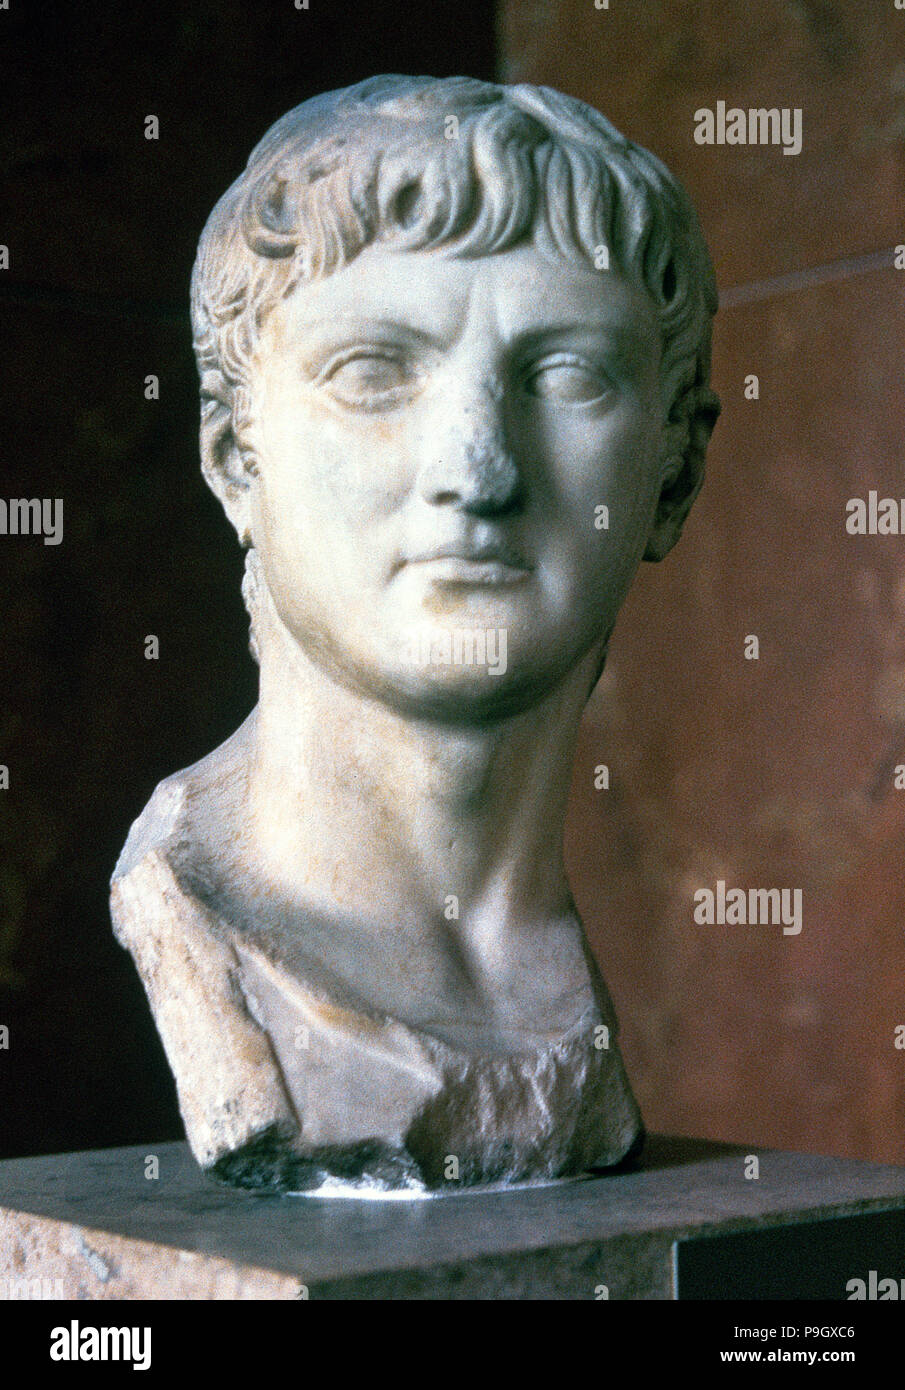 Germanico (Giulio Cesare Augusto o Tiberio Claudio Nerone) (15 a.C. - 19 d.C.), il generale romano. Foto Stock